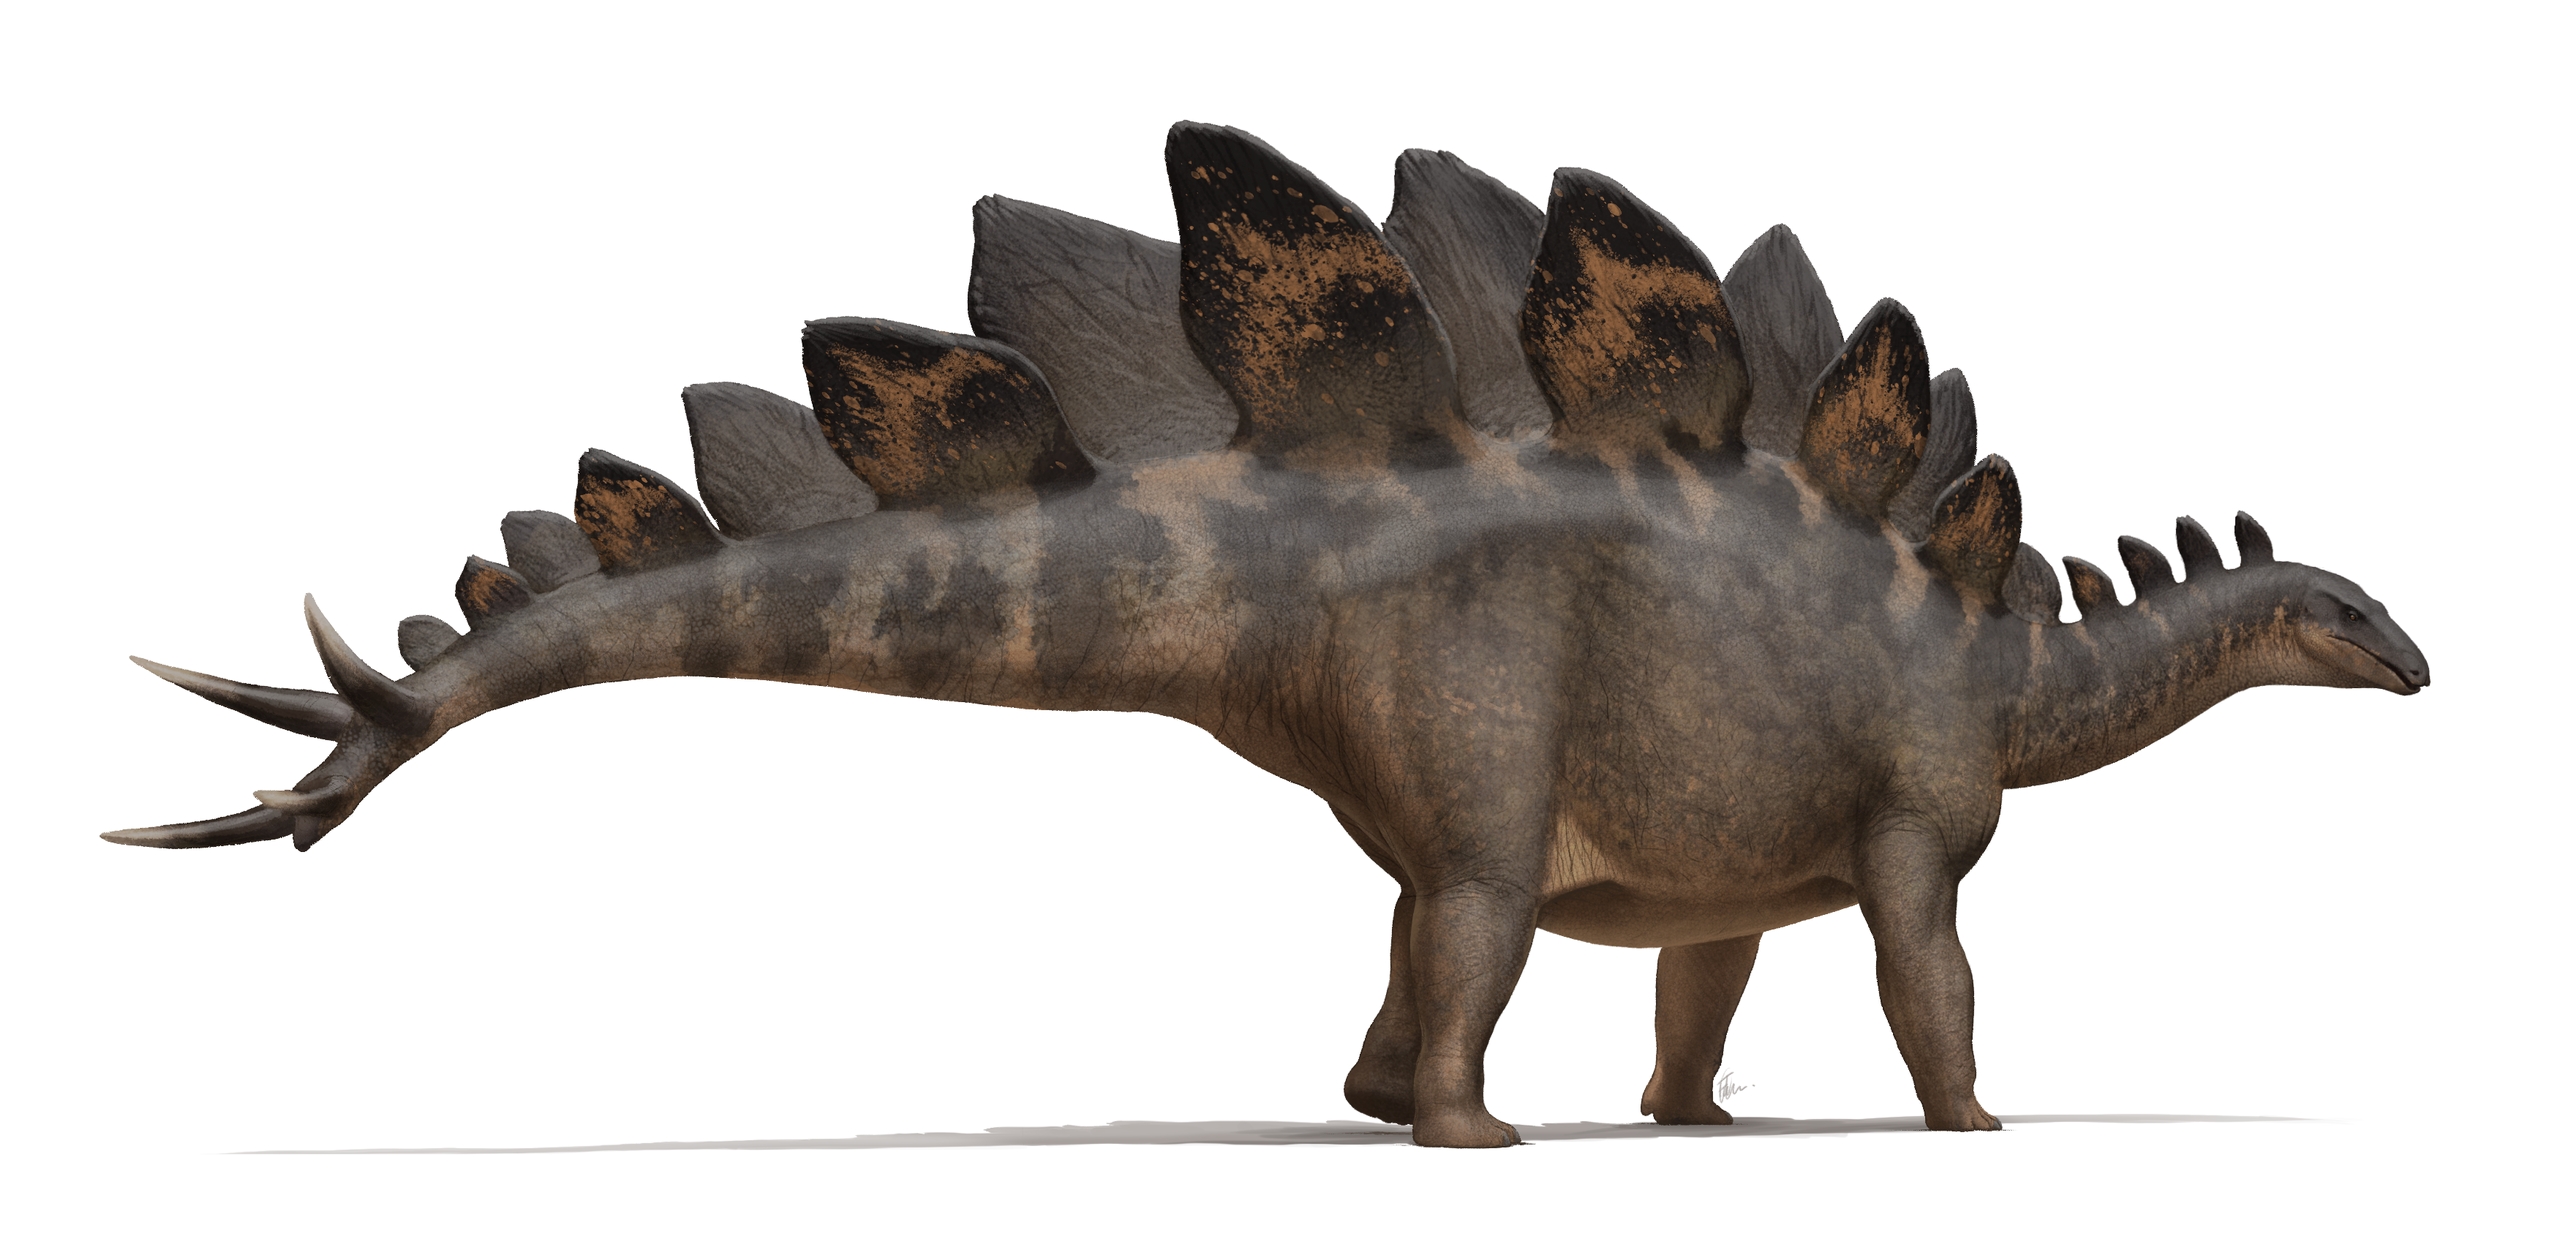 Vyobrazení „Sophie“, subadultního exempláře druhu Stegosaurus stenops. Při délce 5,6 metru a výšce 2,9 metru (až po špičky hřbetních plátů) vážil tento pozdně jurský dinosaurus asi 1600 kilogramů. Plně dorostlí jedinci stegosaurů přitom dosahovali dé